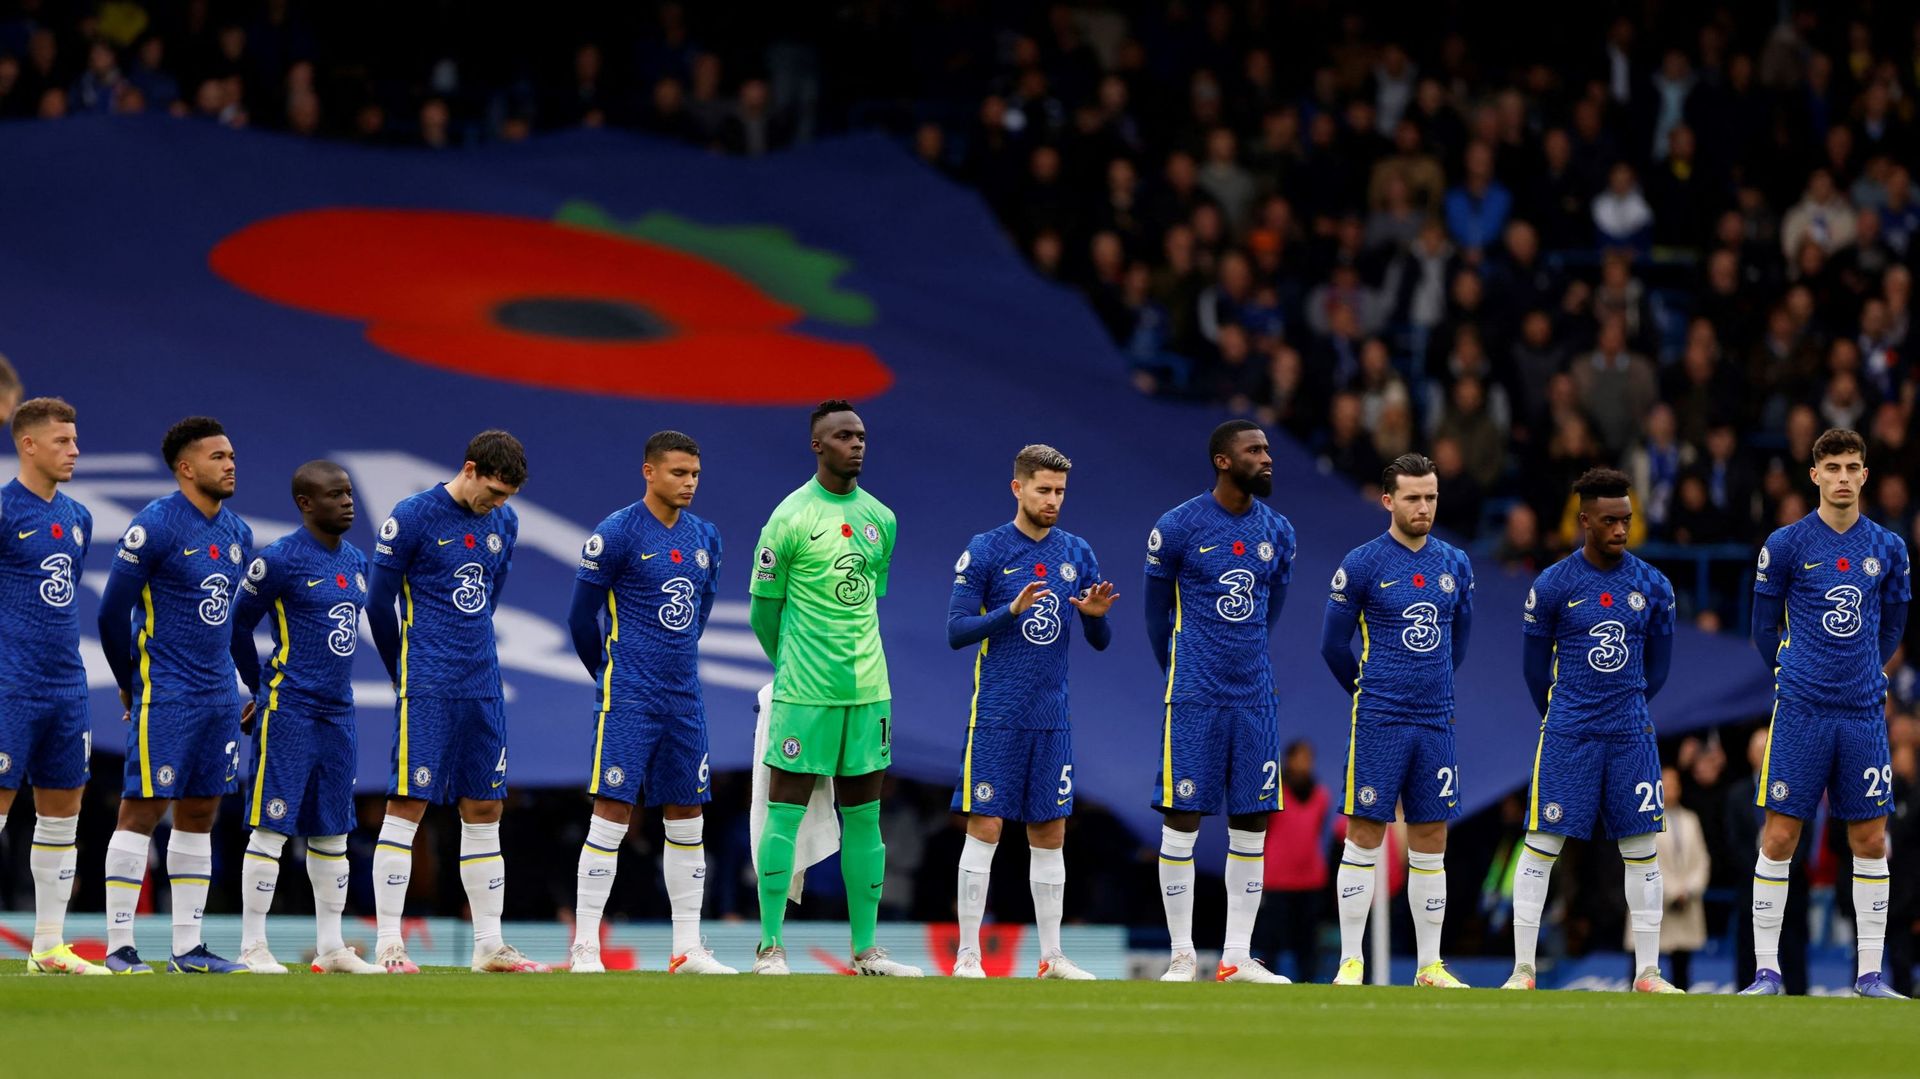 L’équipe de Chelsea représentera l’Europe lors de la prochaine Coupe du monde des clubs de football. Initialement prévue au Japon en décembre, elle se tiendra finalement aux Emirats arabes unis, du 3 au 12 février 2022.